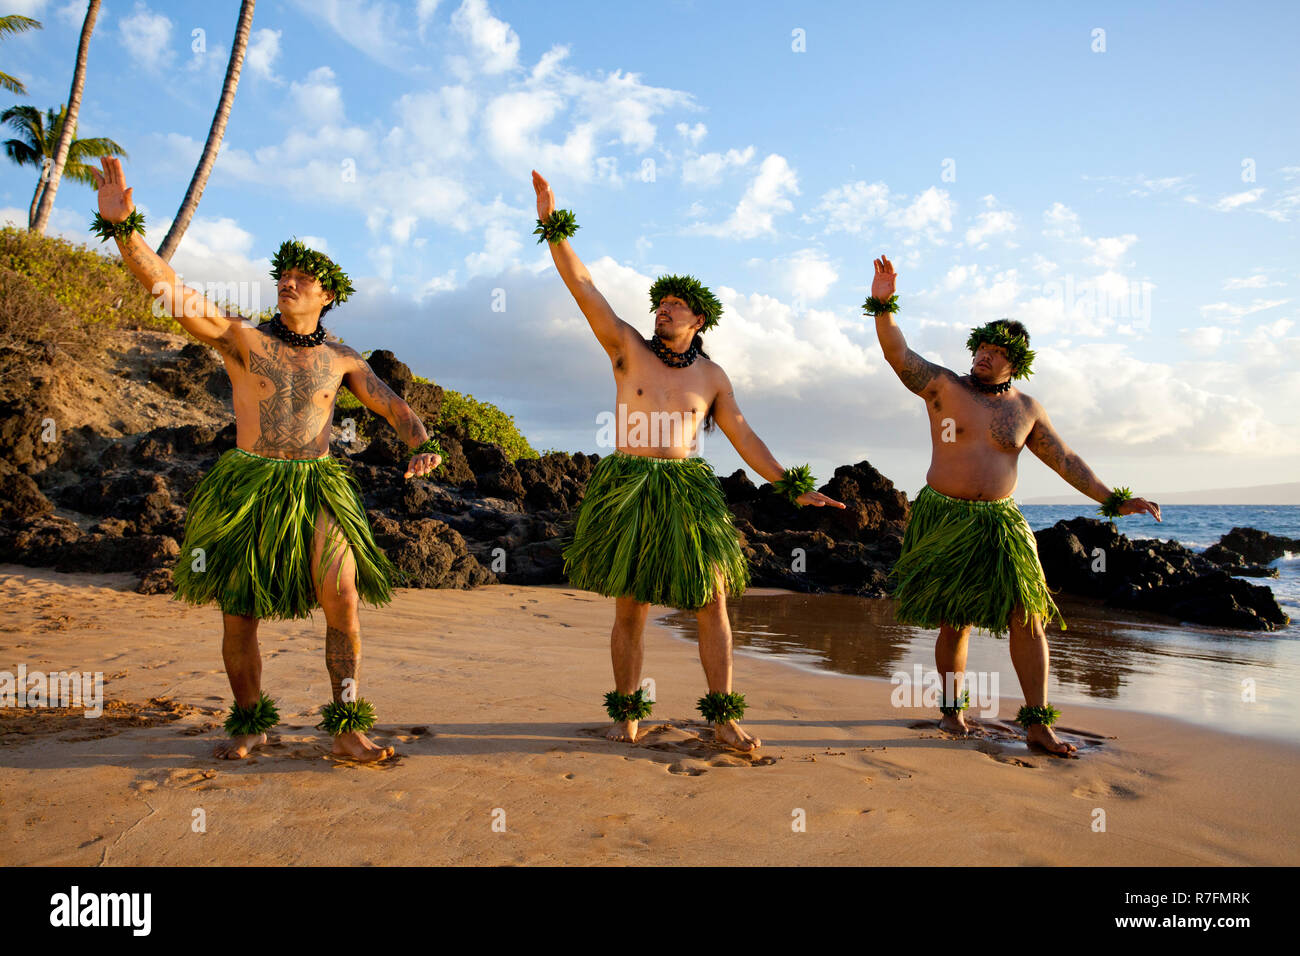 Three male hula dancers at sunset at Maui, Hawaii. Stock Photo